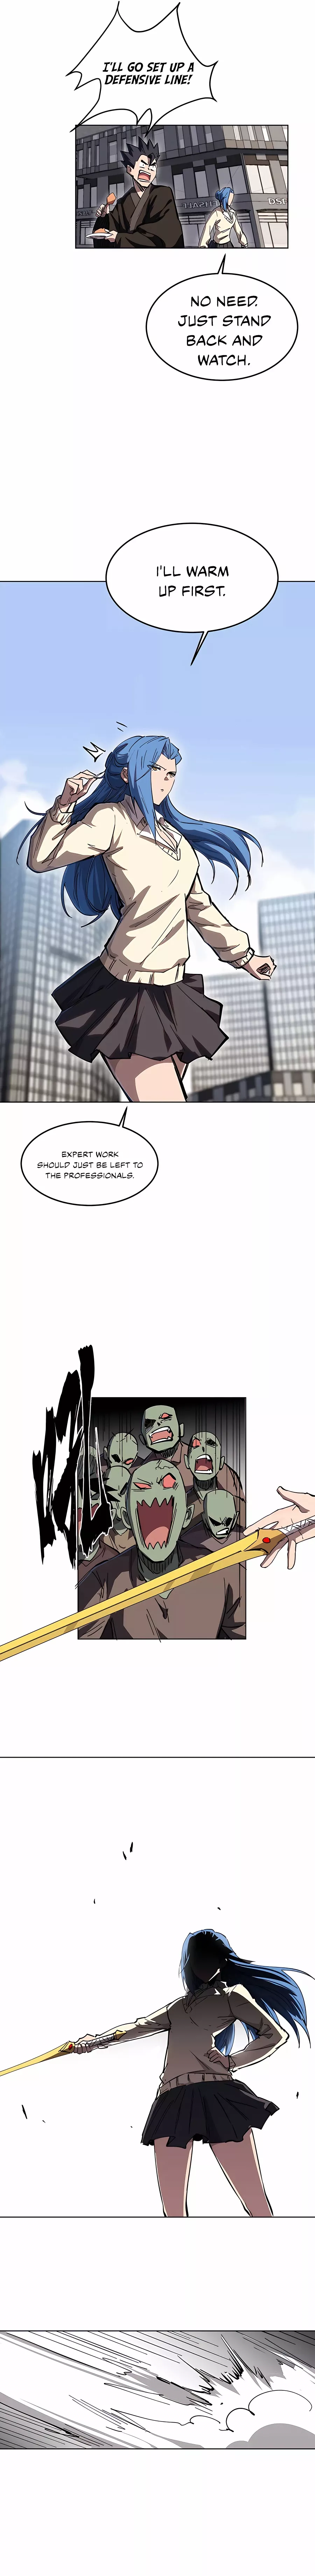 Mr. Zombie Chapter 24 page 3 - Mangakakalot